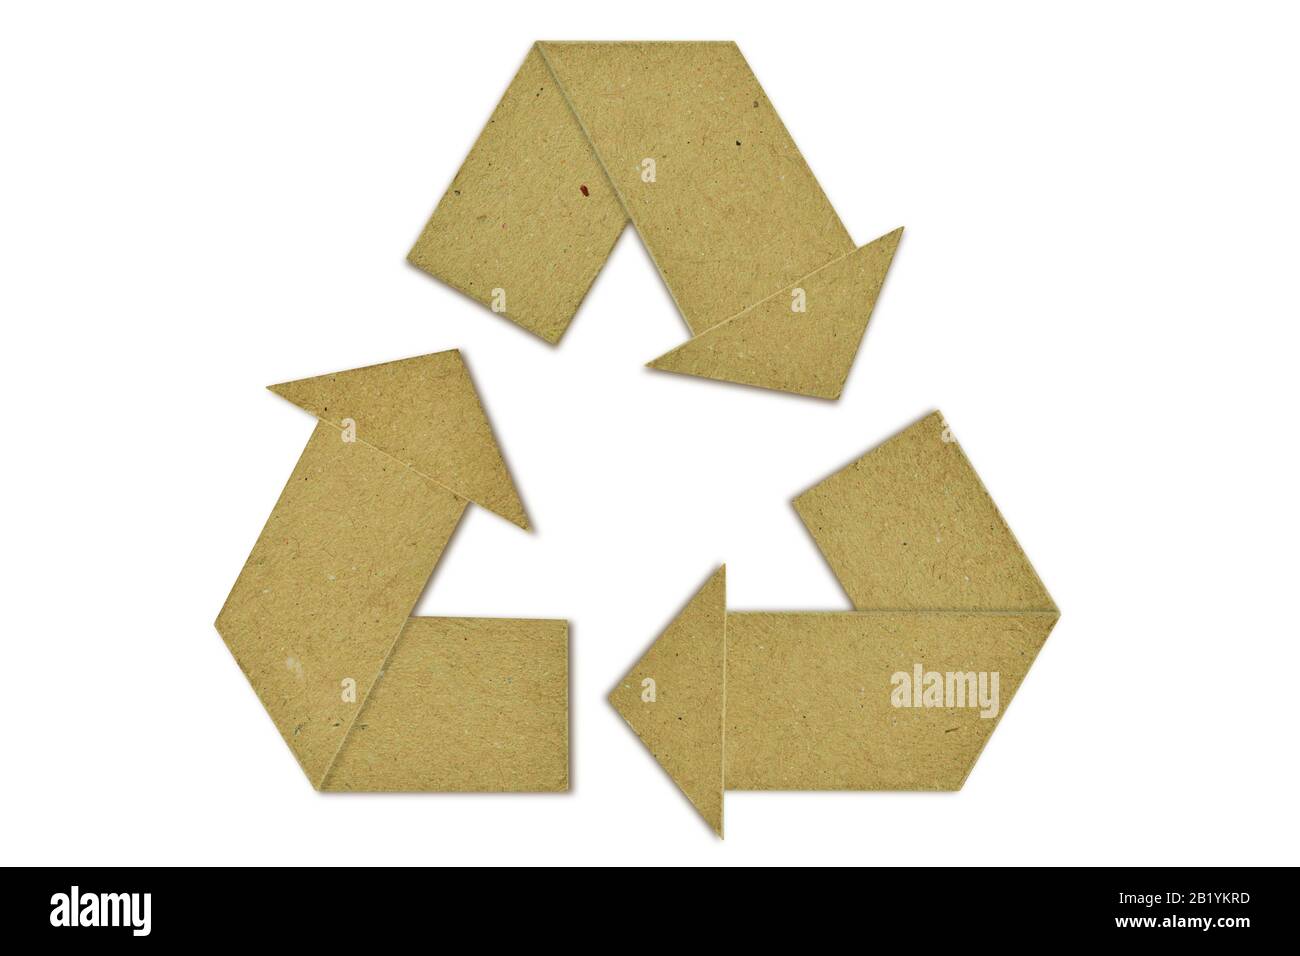 Symbole de recyclage carton Banque d'images détourées - Alamy